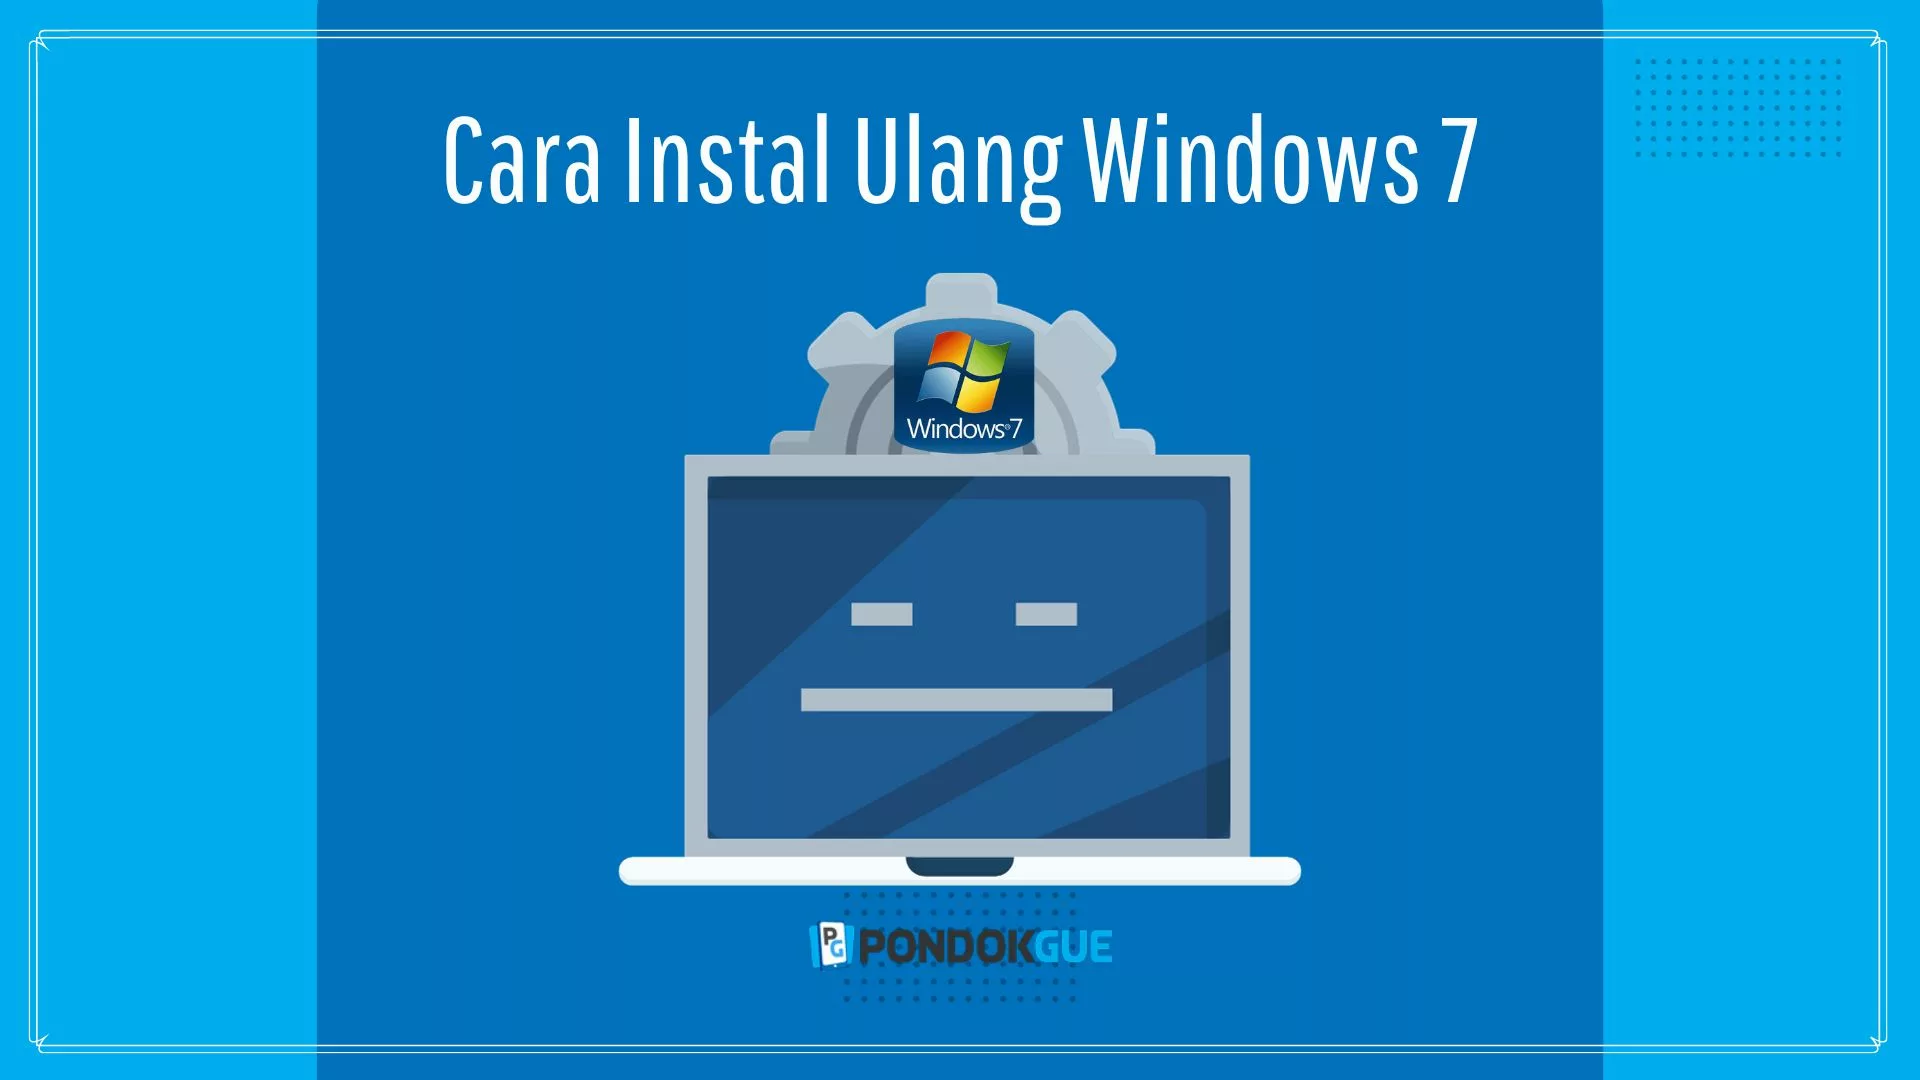 Cara Instal Ulang Windows 7 - Pondokgue.com